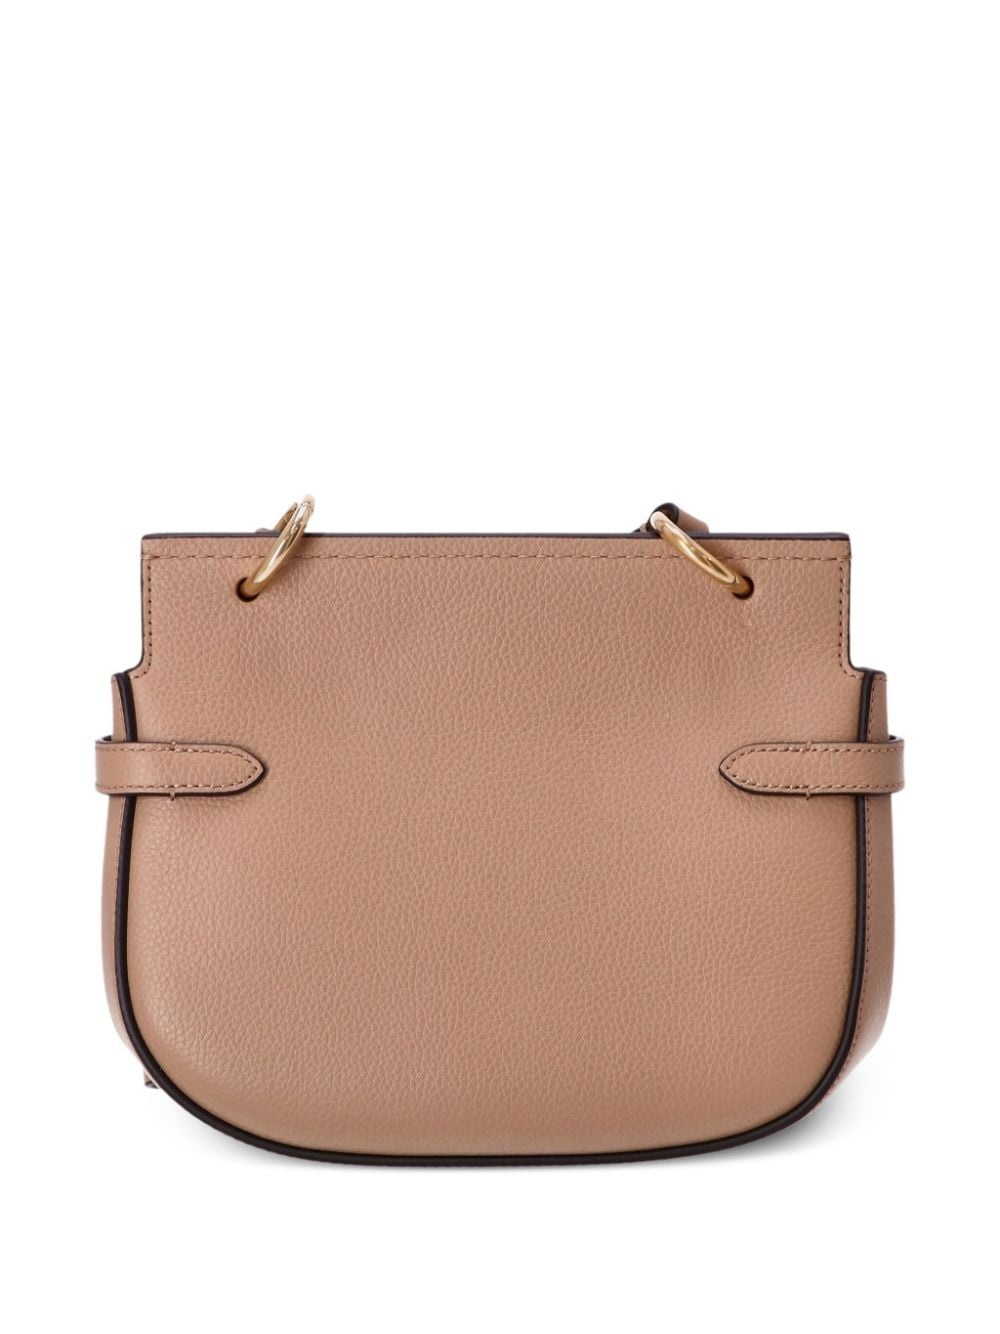 Amberley leather satchel bag - 2